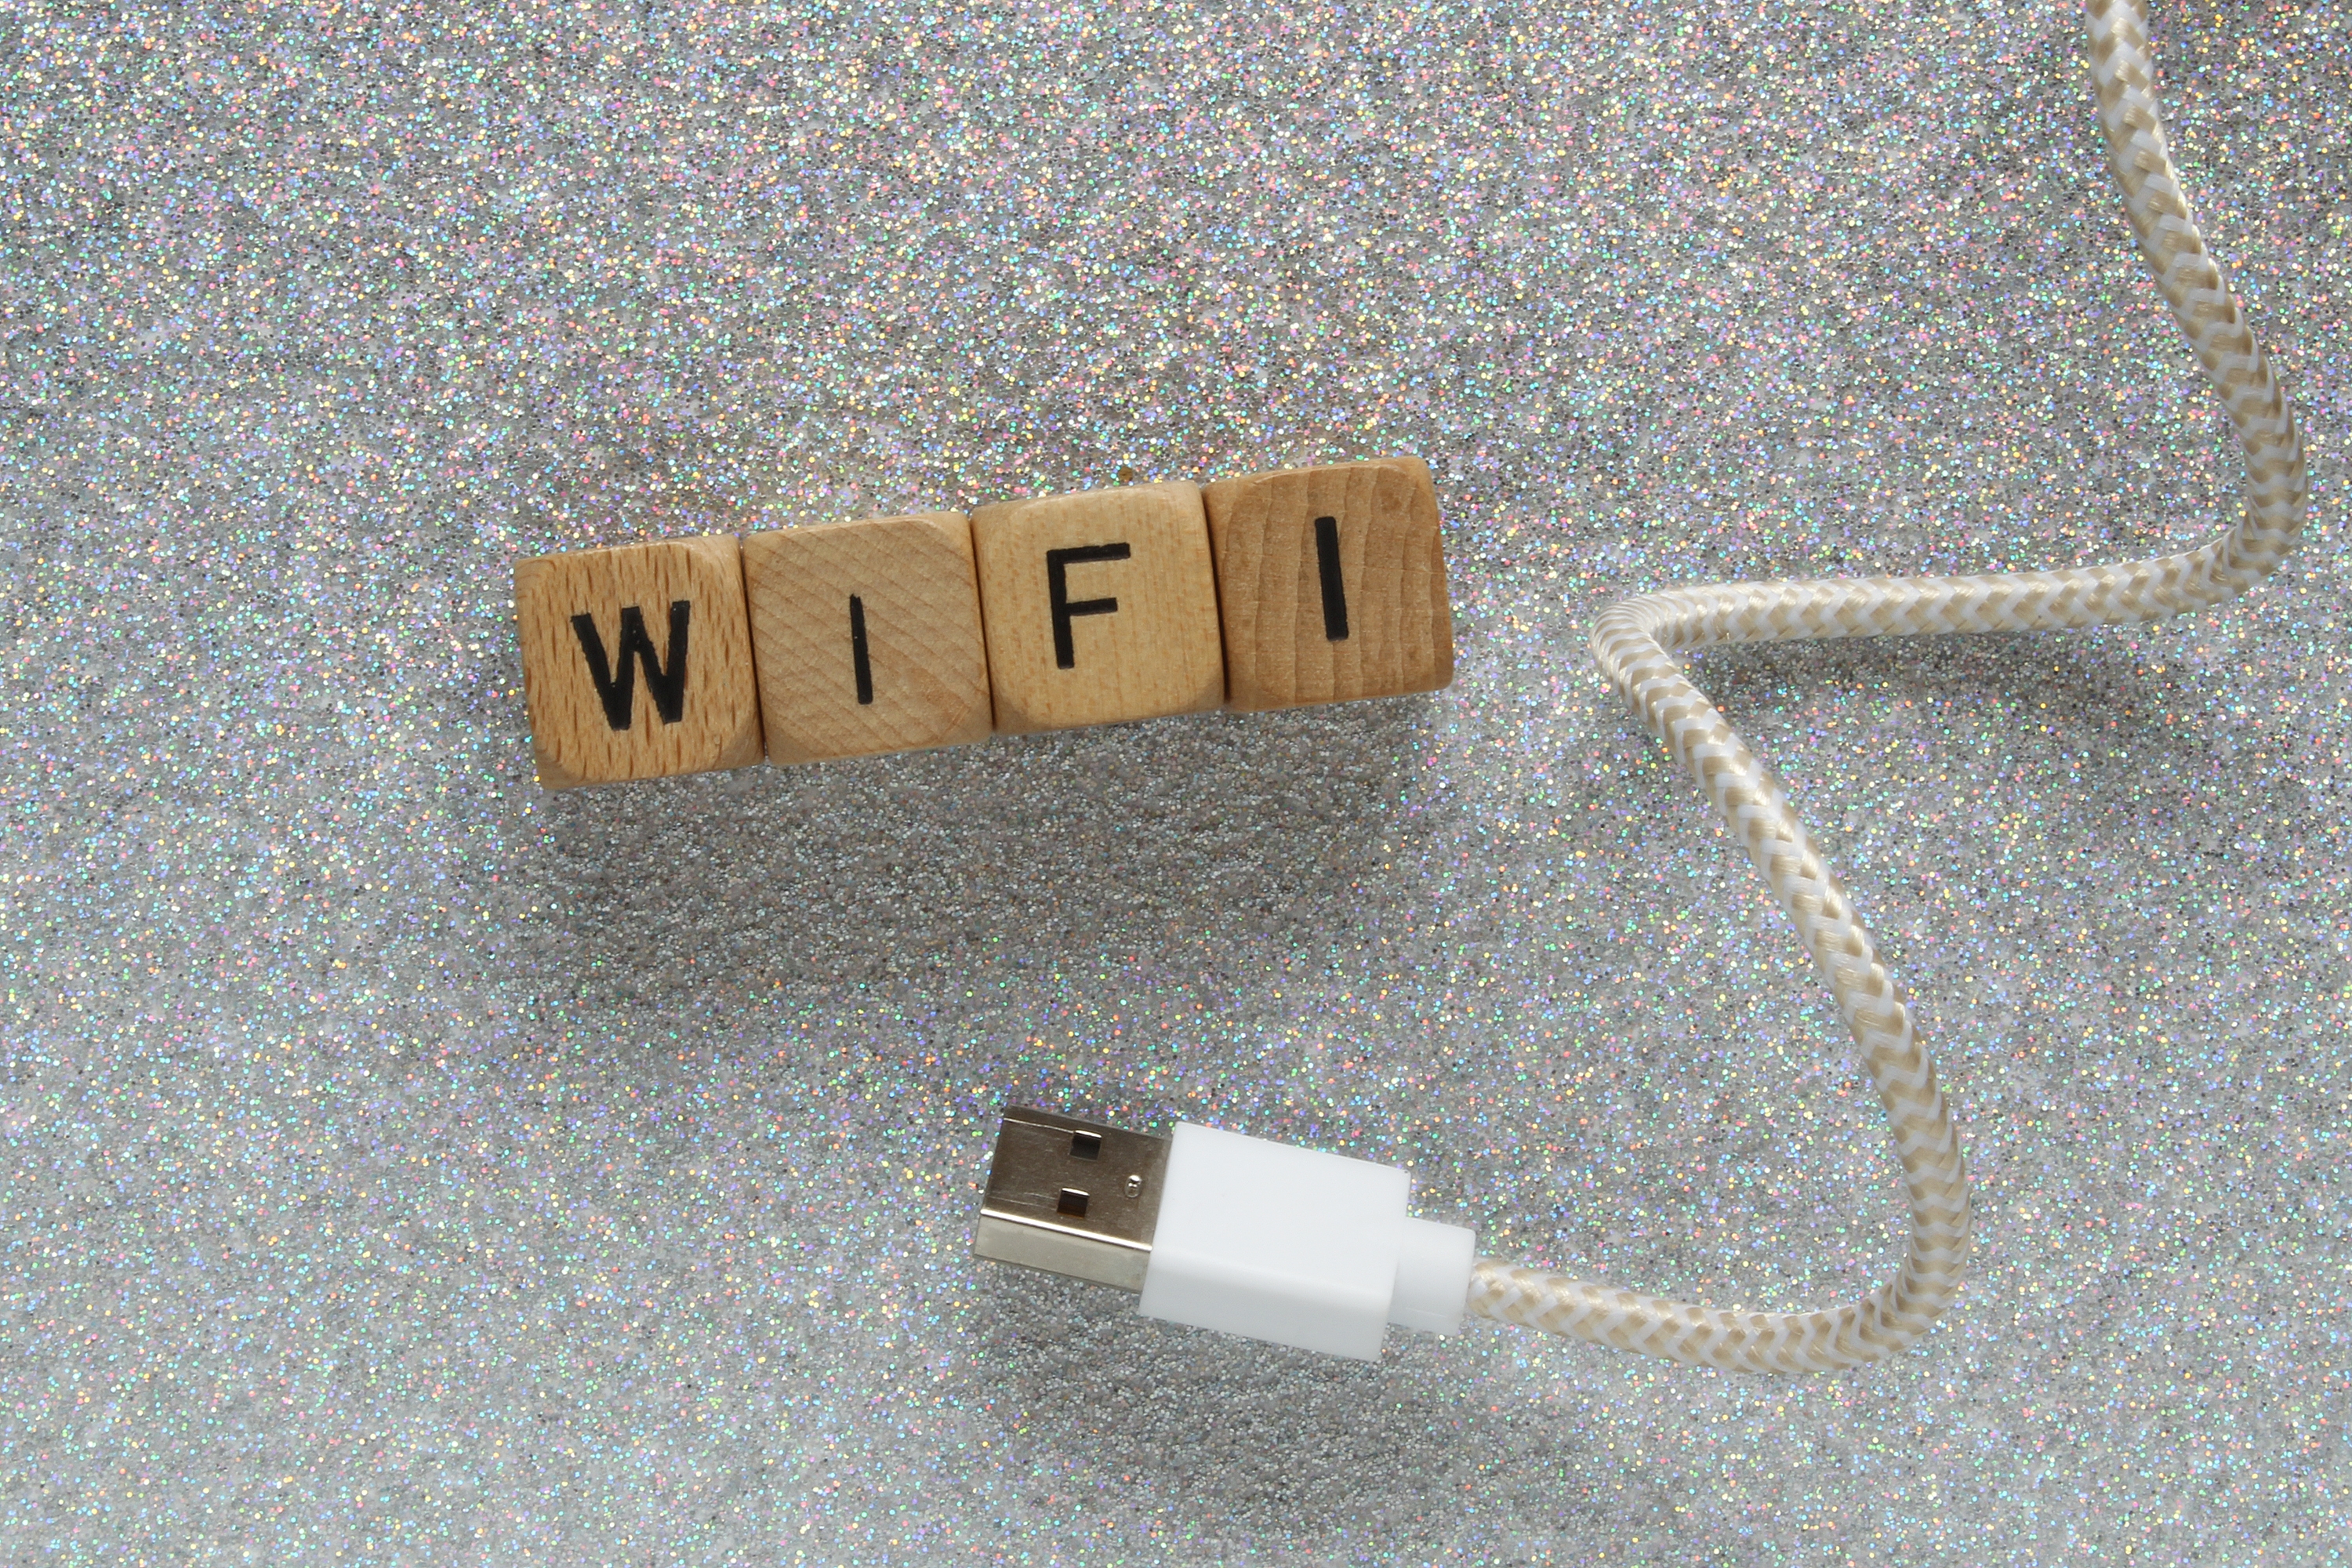 WiFi cord